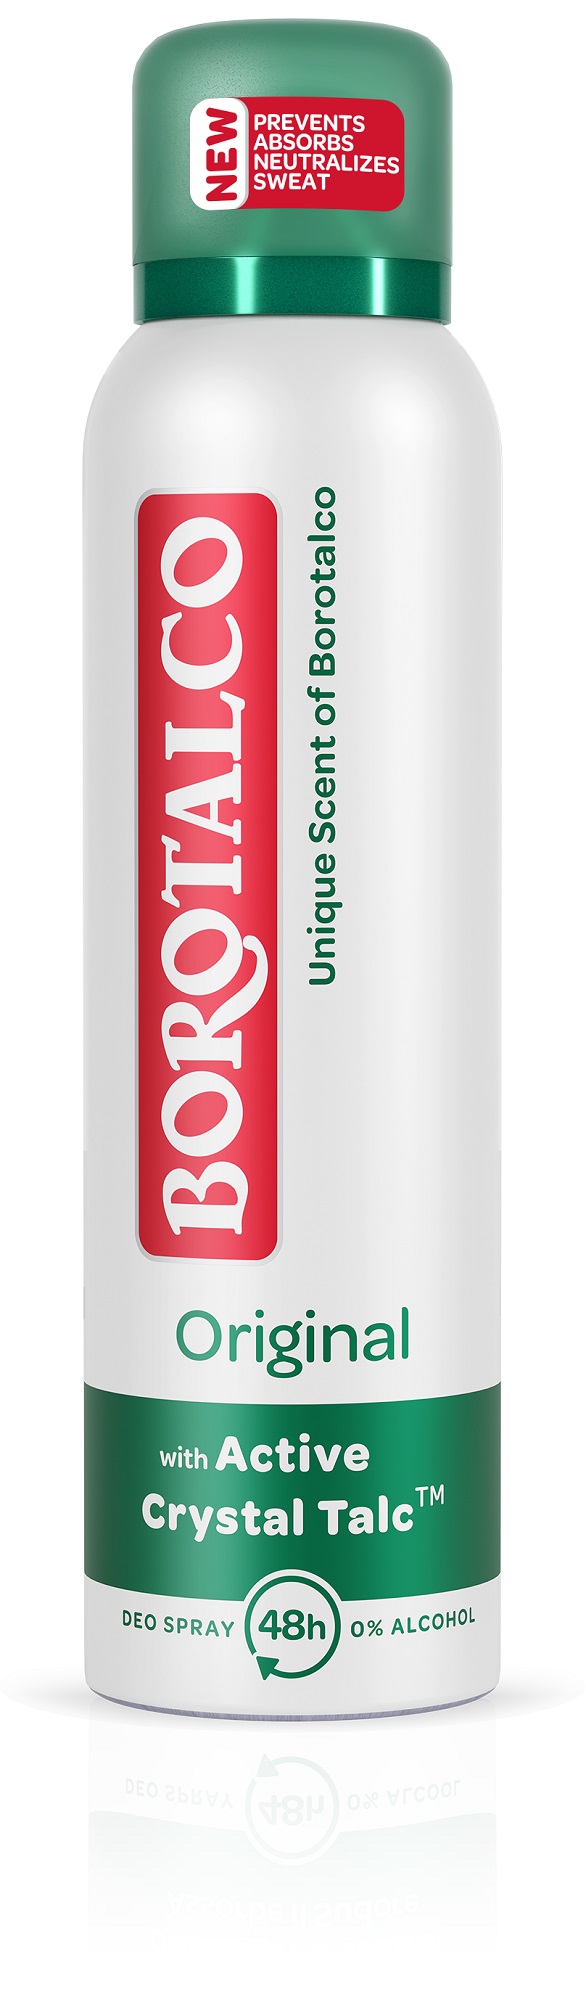 Borotalco Deodorant ve spreji Original 150 ml